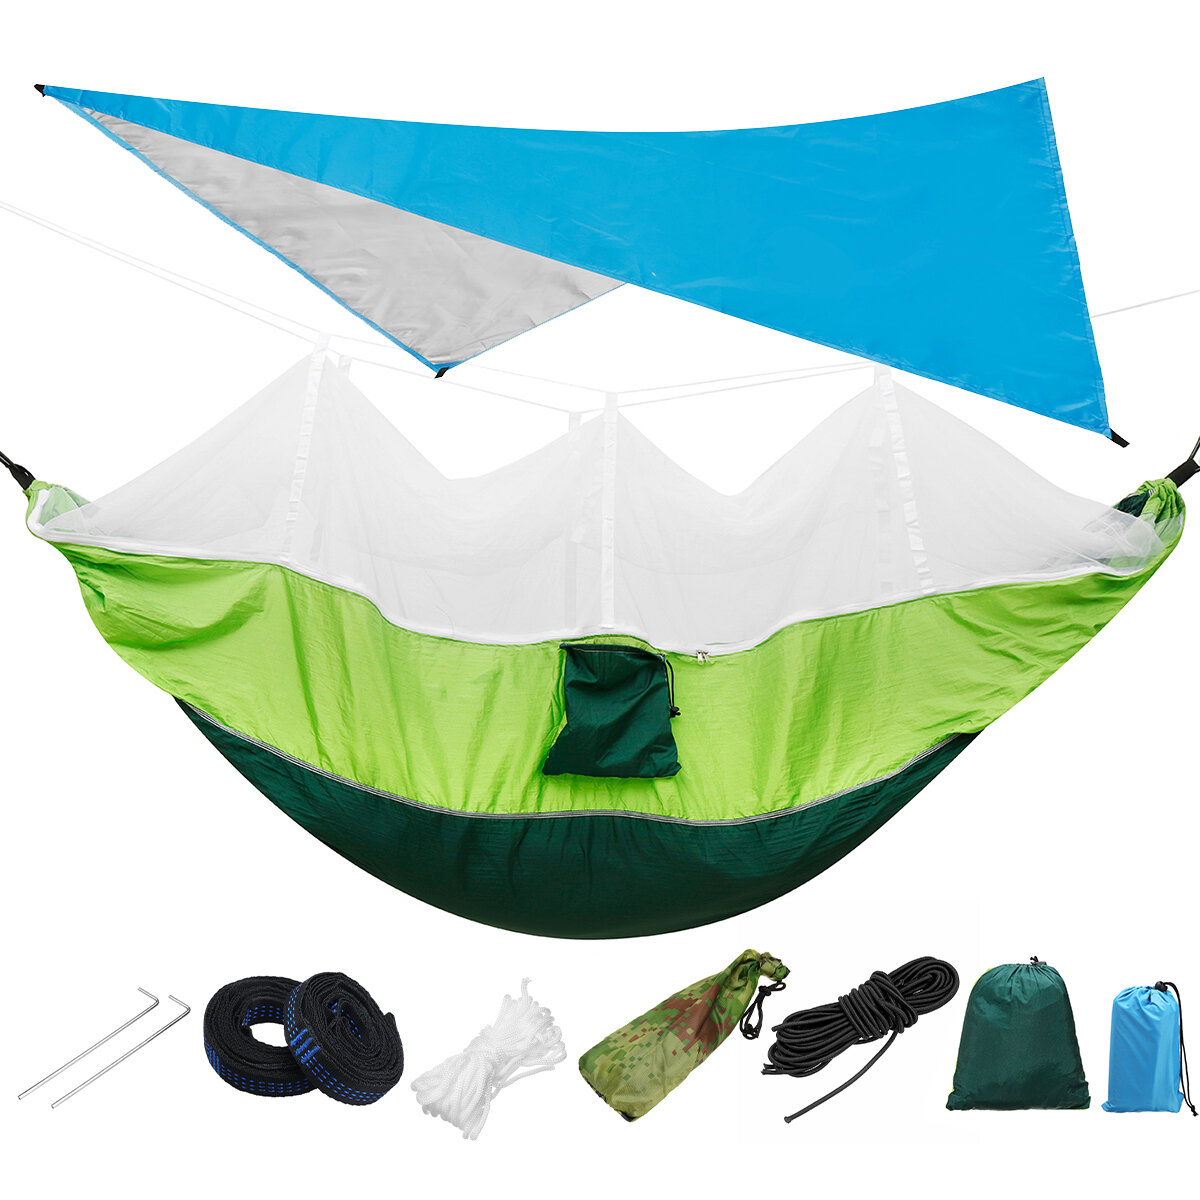 IPRee® 300KG Terhelés 18db / készlet Könnyű hordozható kempingágy és sátor ernyő készlet Eső Fly Tarp Mosquito Net Canopy 210T Nylon Hammocks, vízálló 2000 Fa szíjak Napellenző.